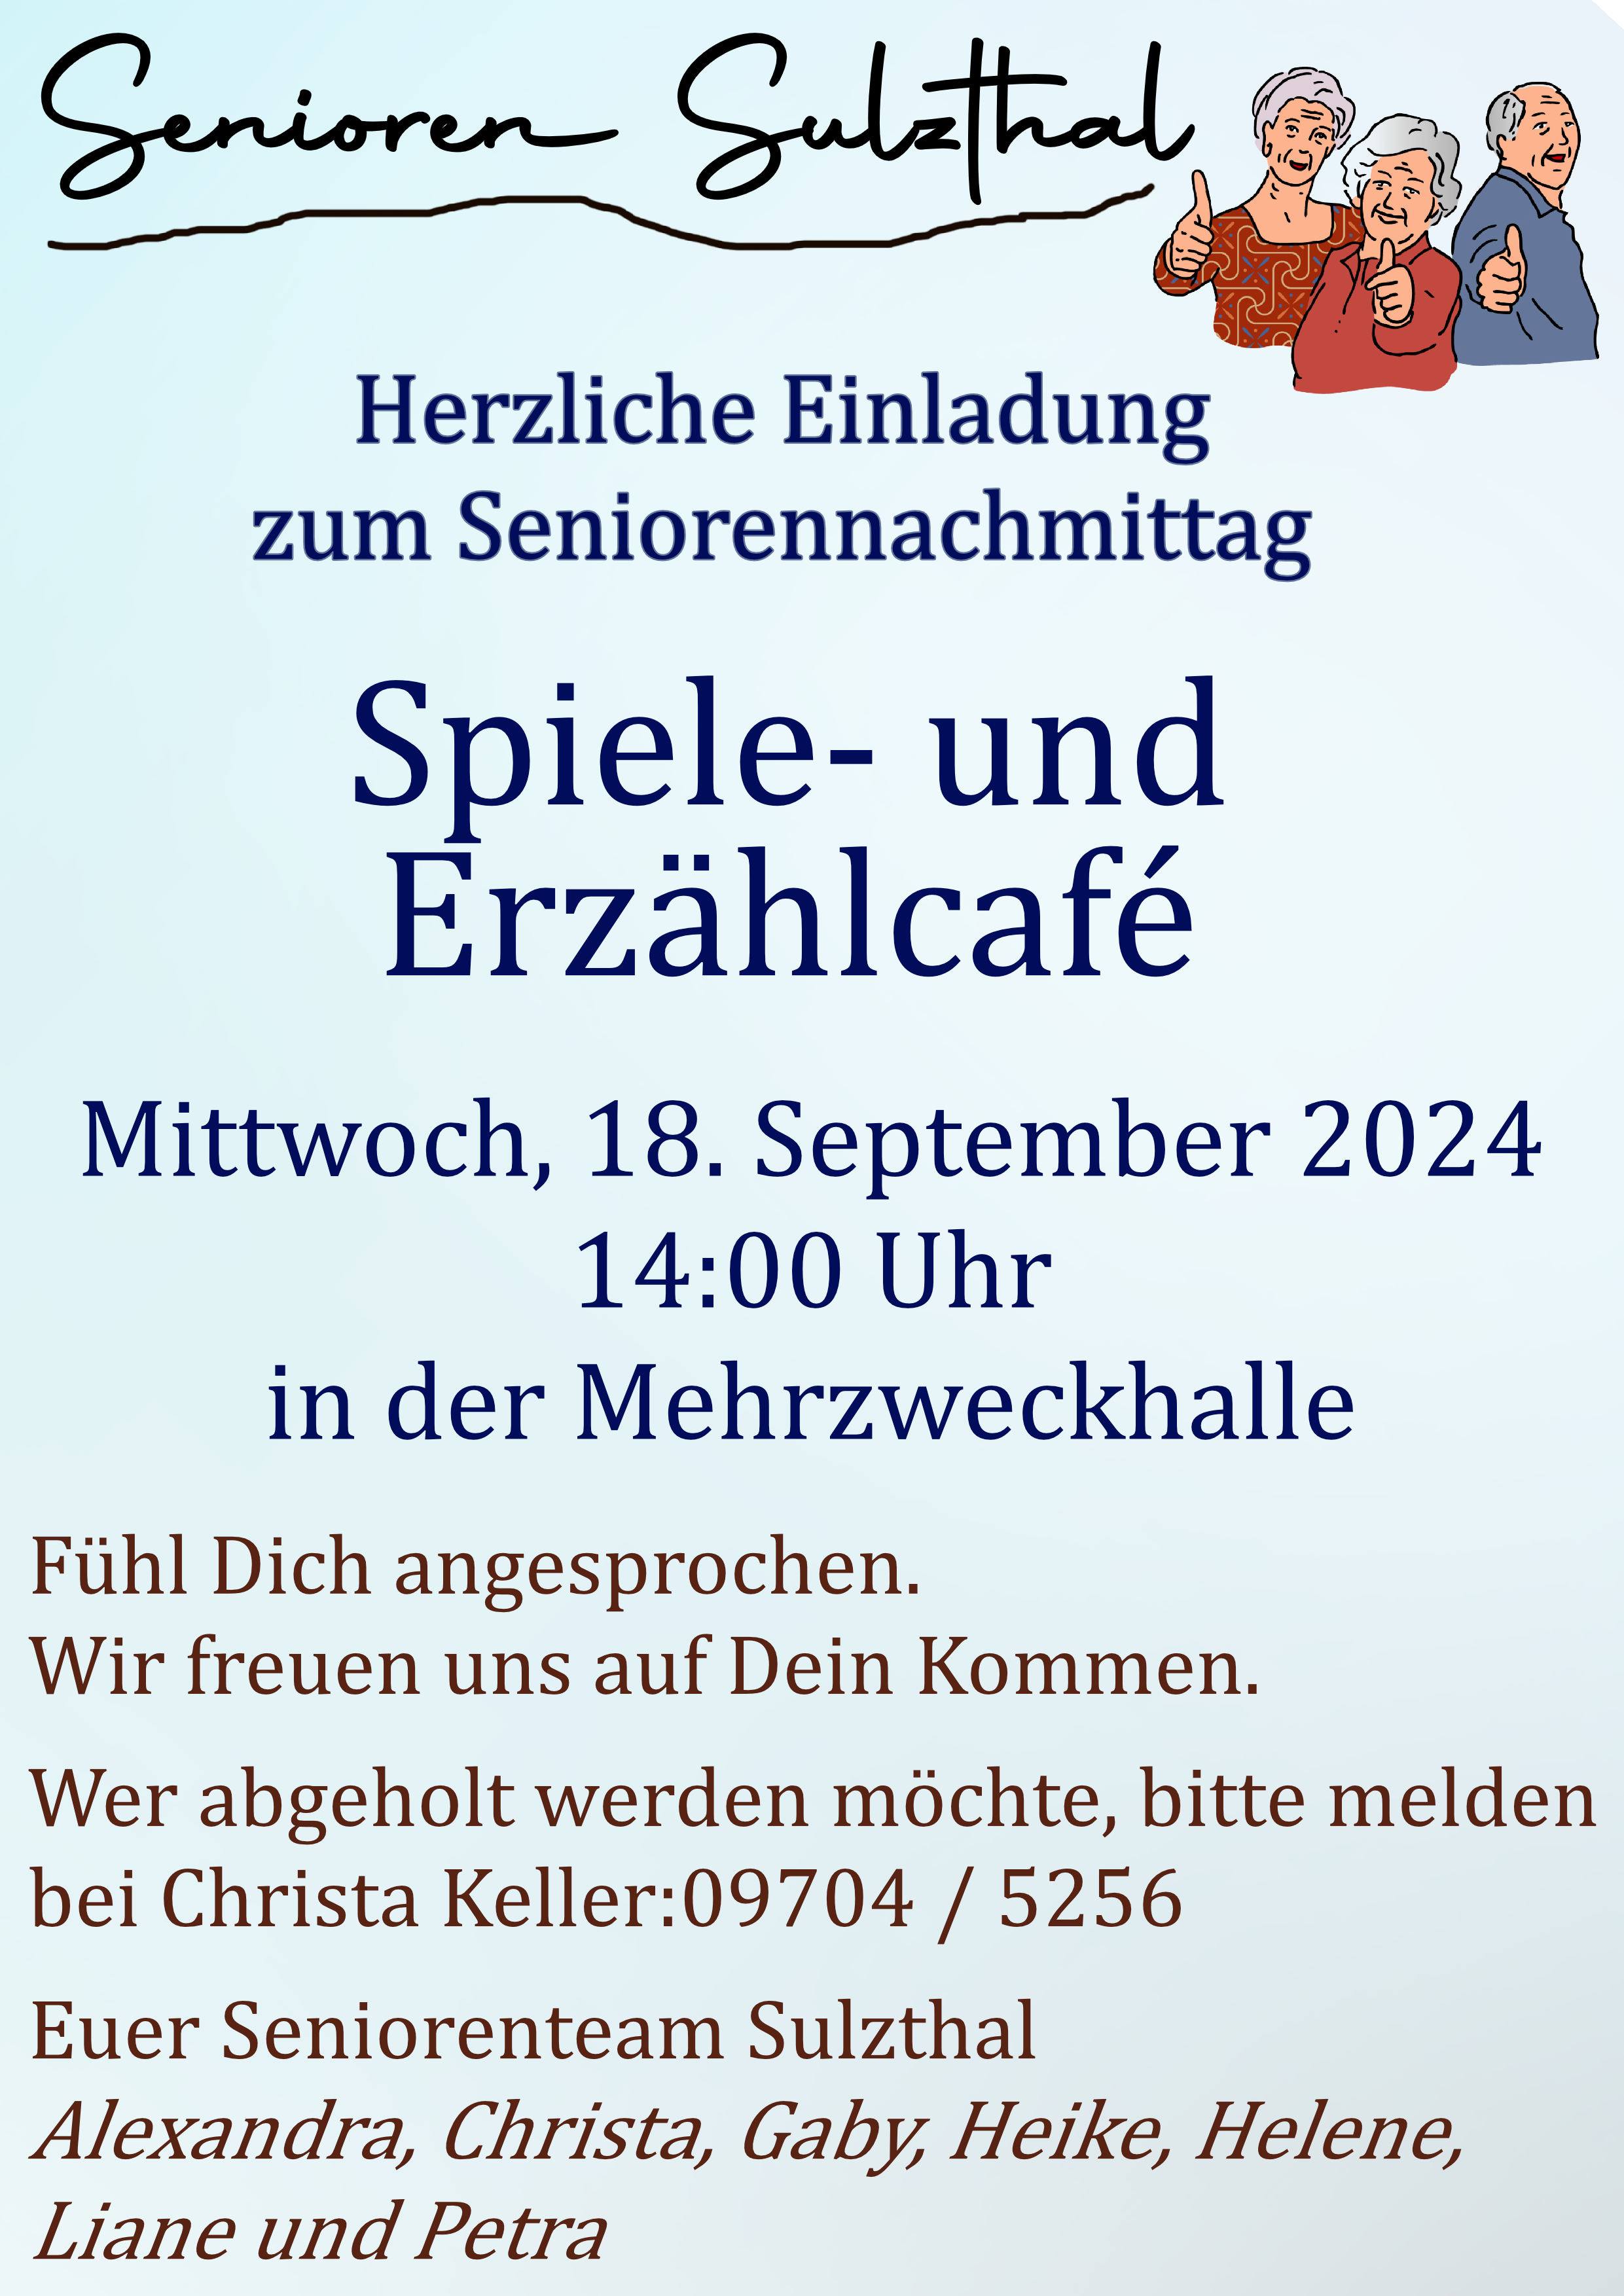 Senioren Sulzthal 2024 09 18 Erzählcafe